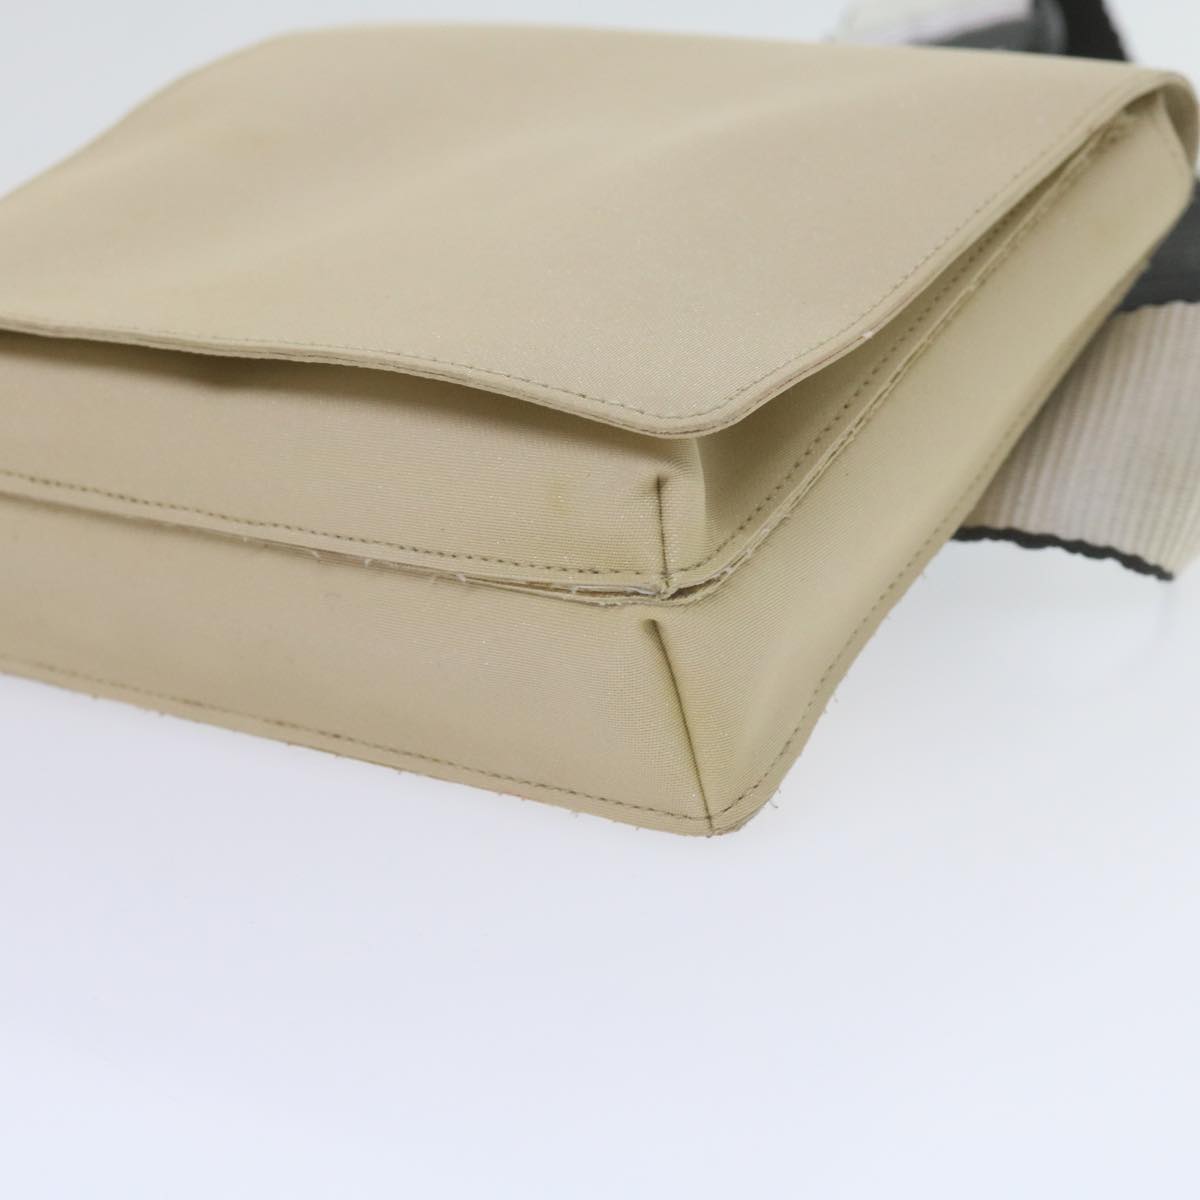 CHANEL Waist bag PVC Leather Beige CC Auth 61070